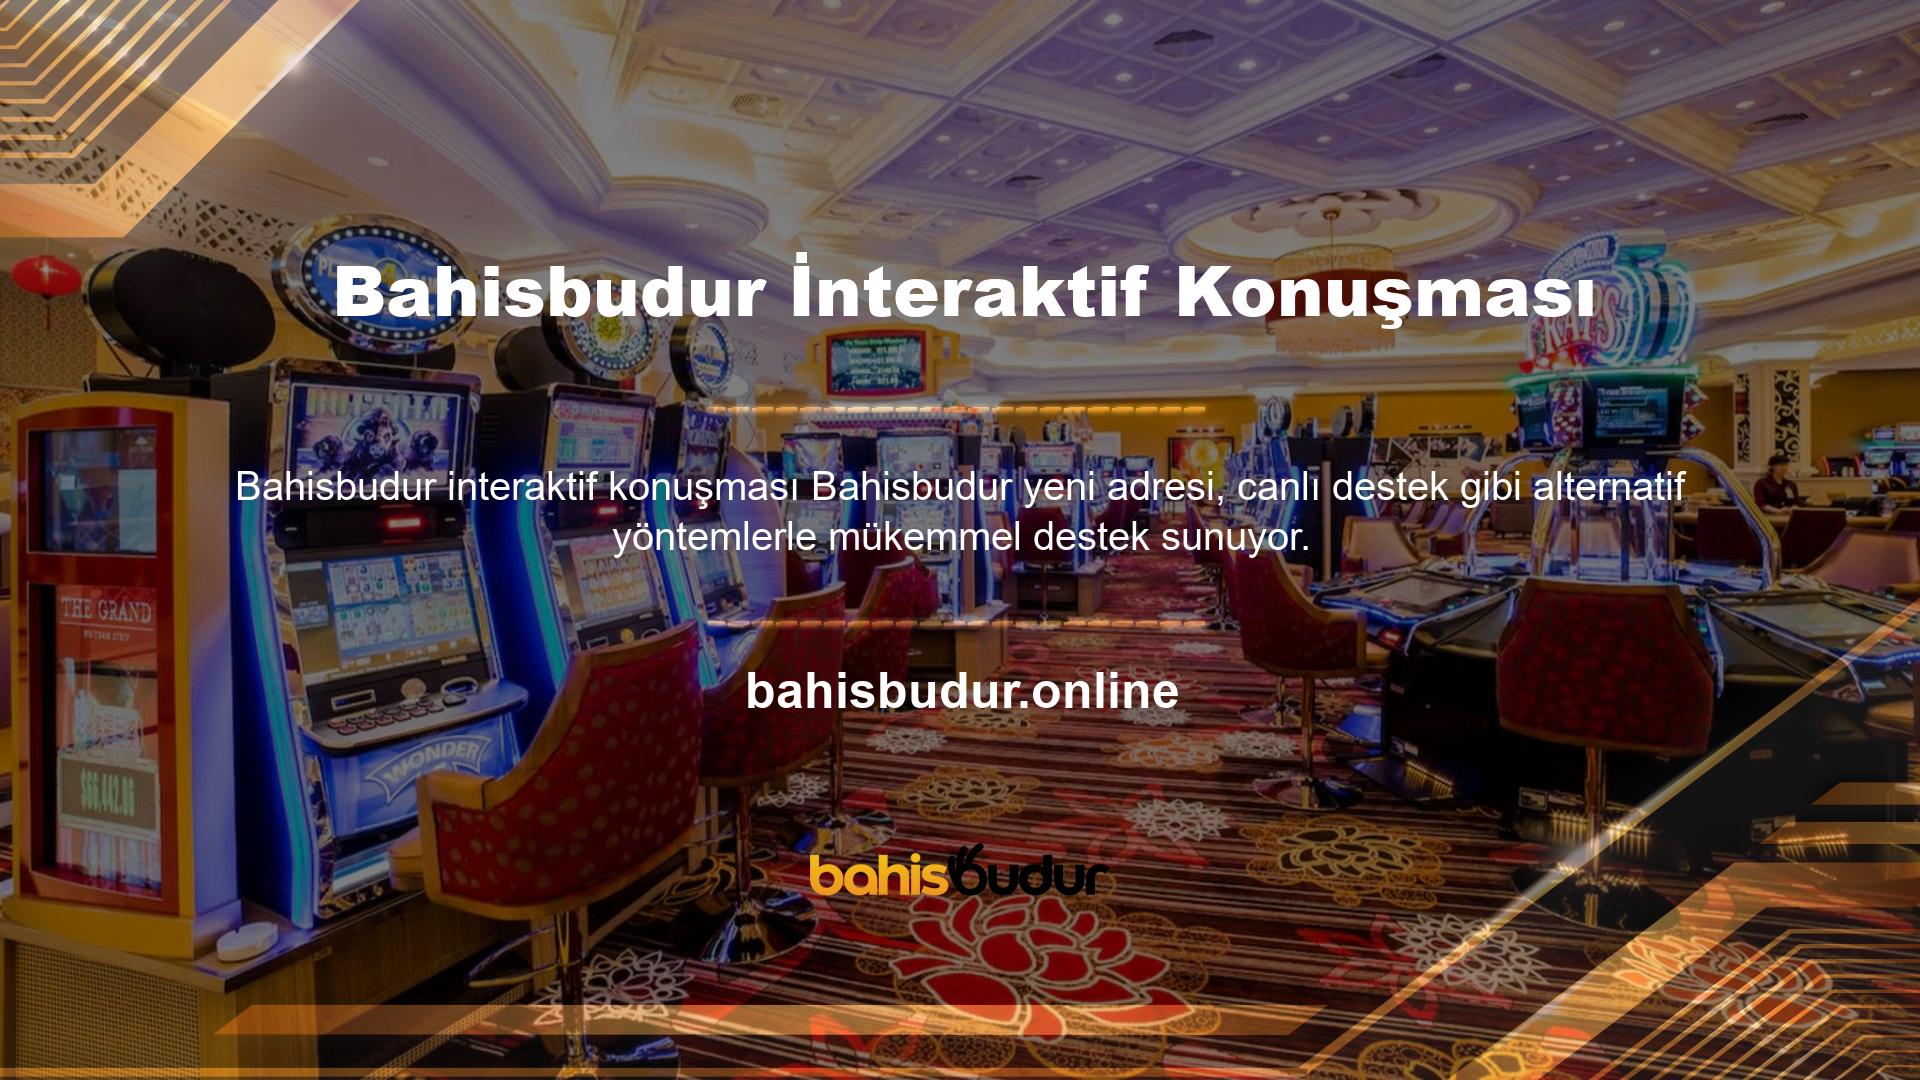 Çevrimiçi casino siteleri müşterileriyle rastgele sorular ve yorumlar yoluyla iletişim kurmayı sever